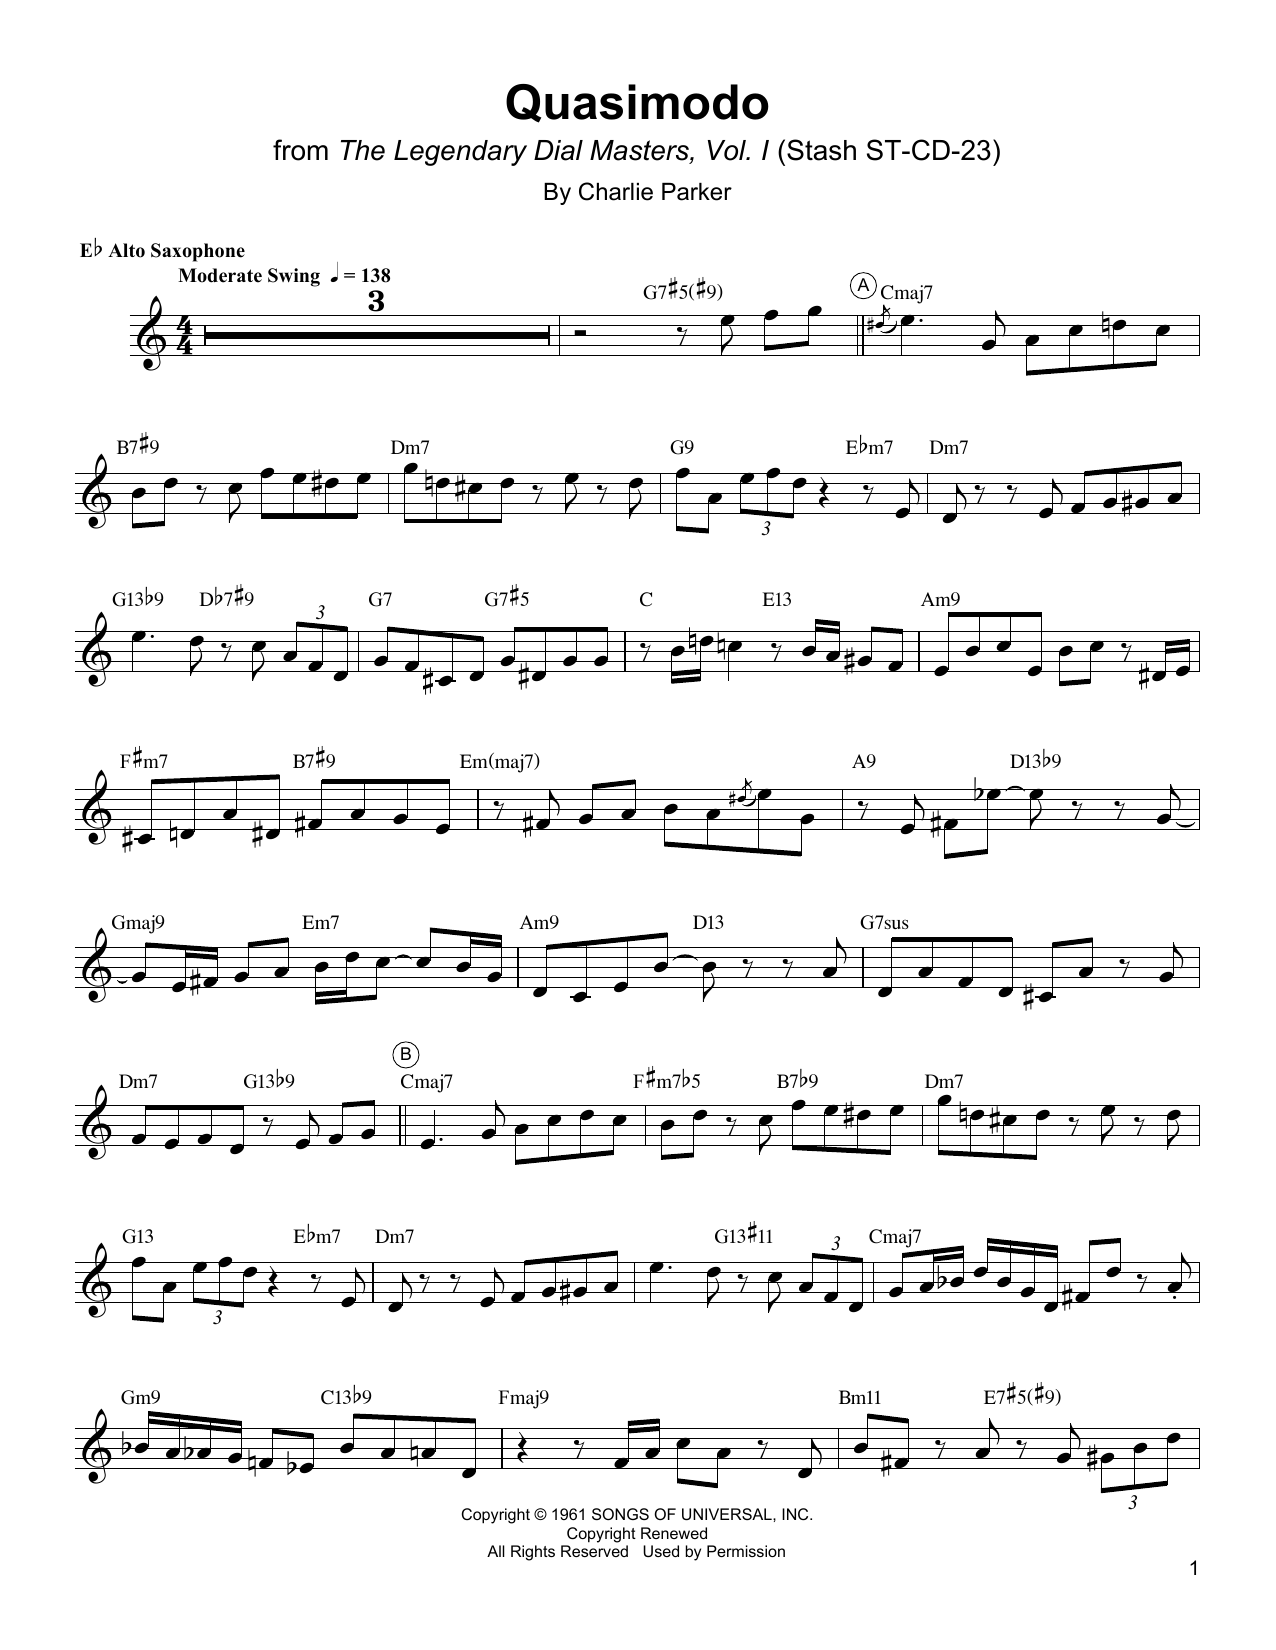 Charlie Parker Quasimodo Sheet Music Notes & Chords for Alto Sax Transcription - Download or Print PDF